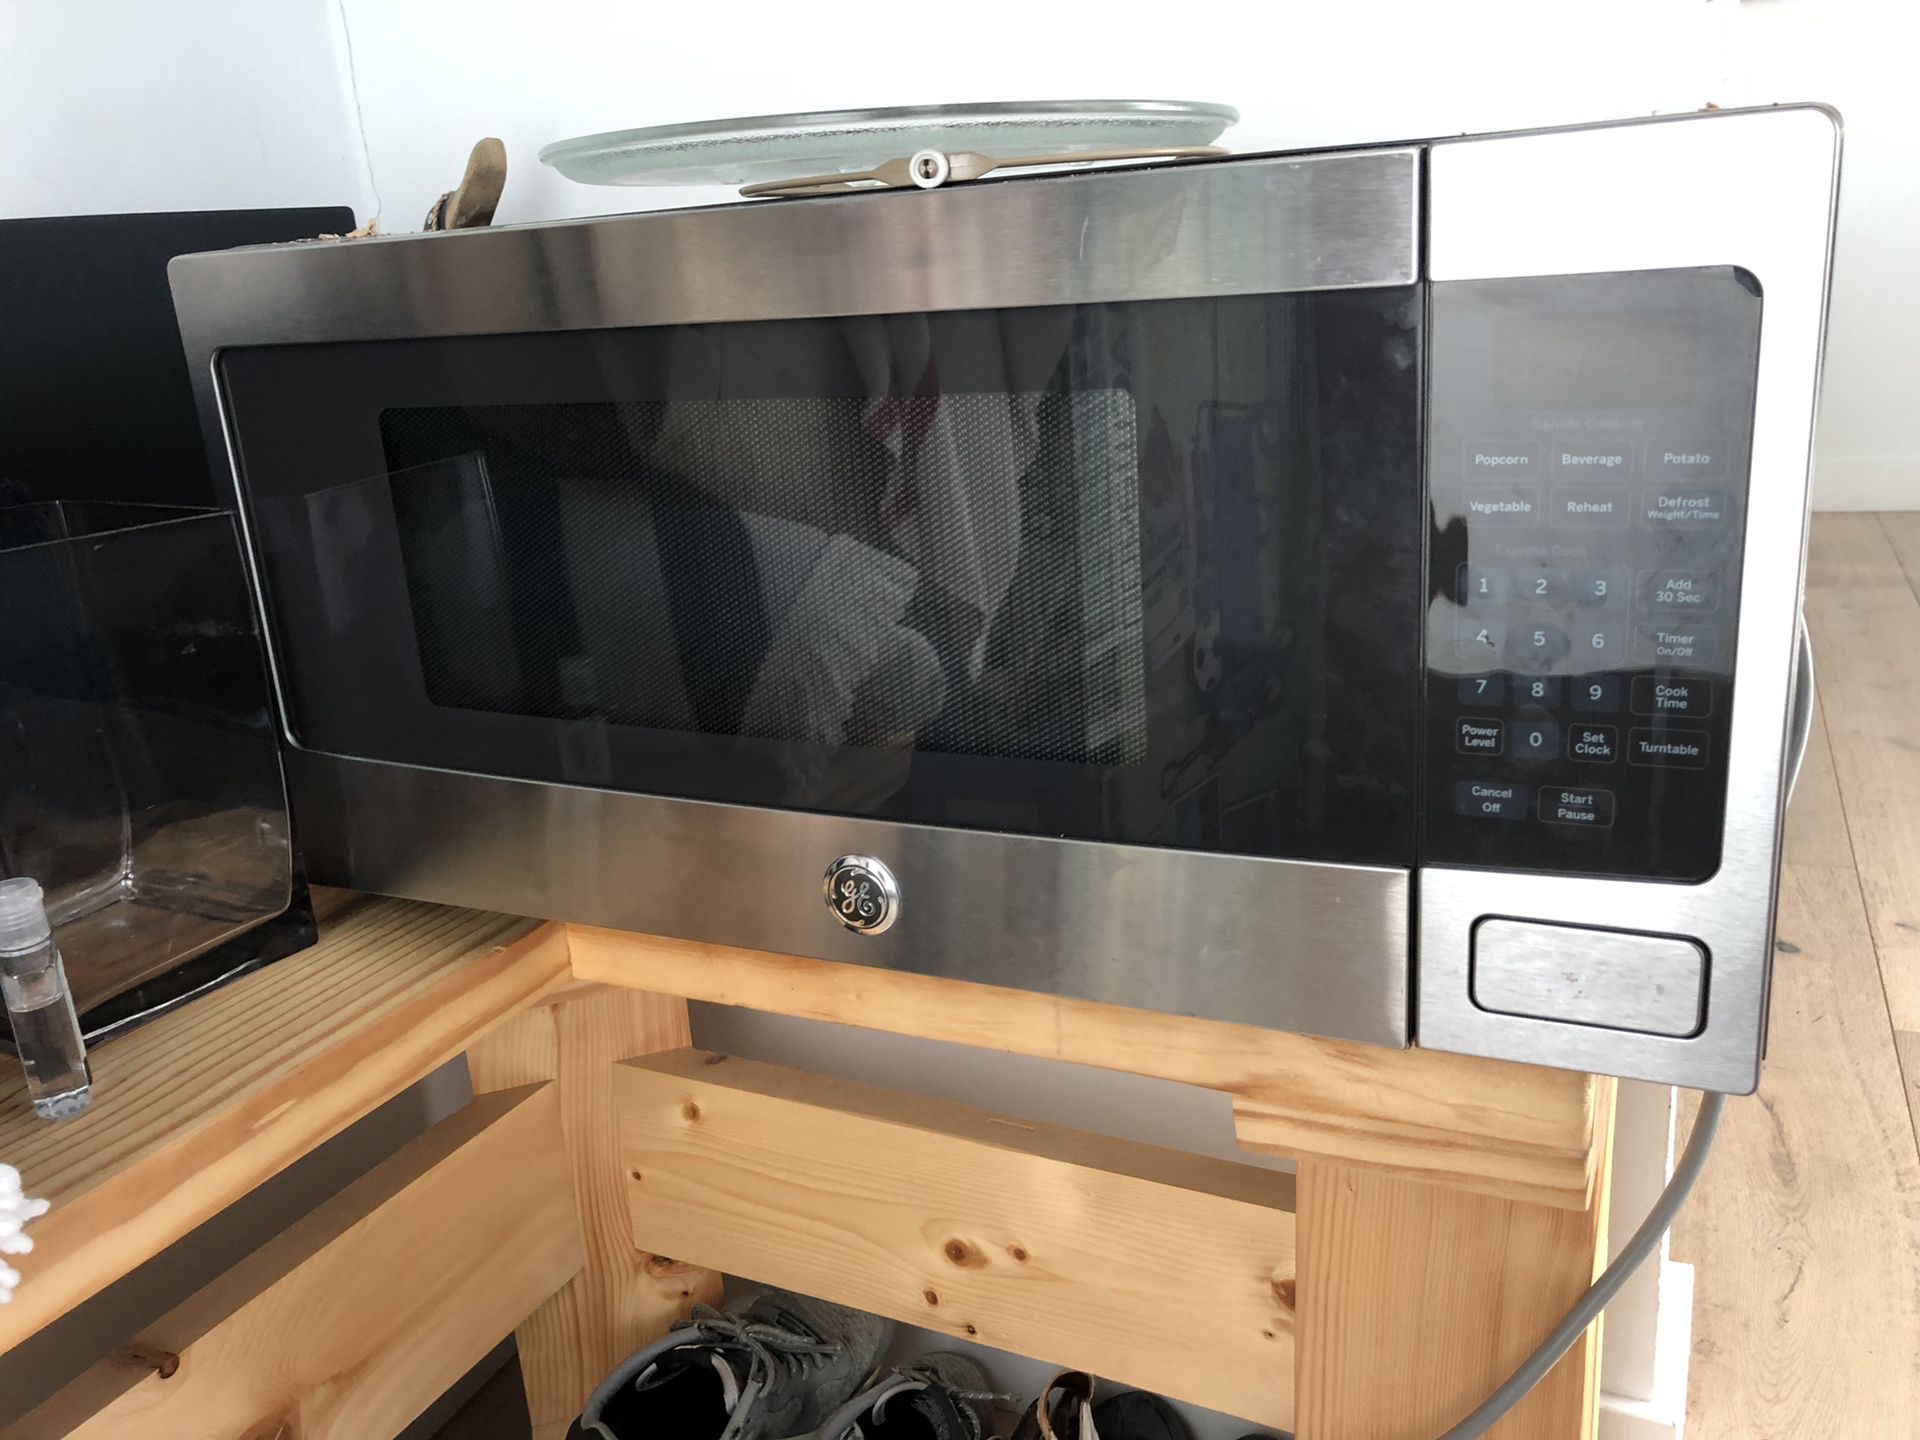 GE Microwave - Jan 2018 model Orig. $399